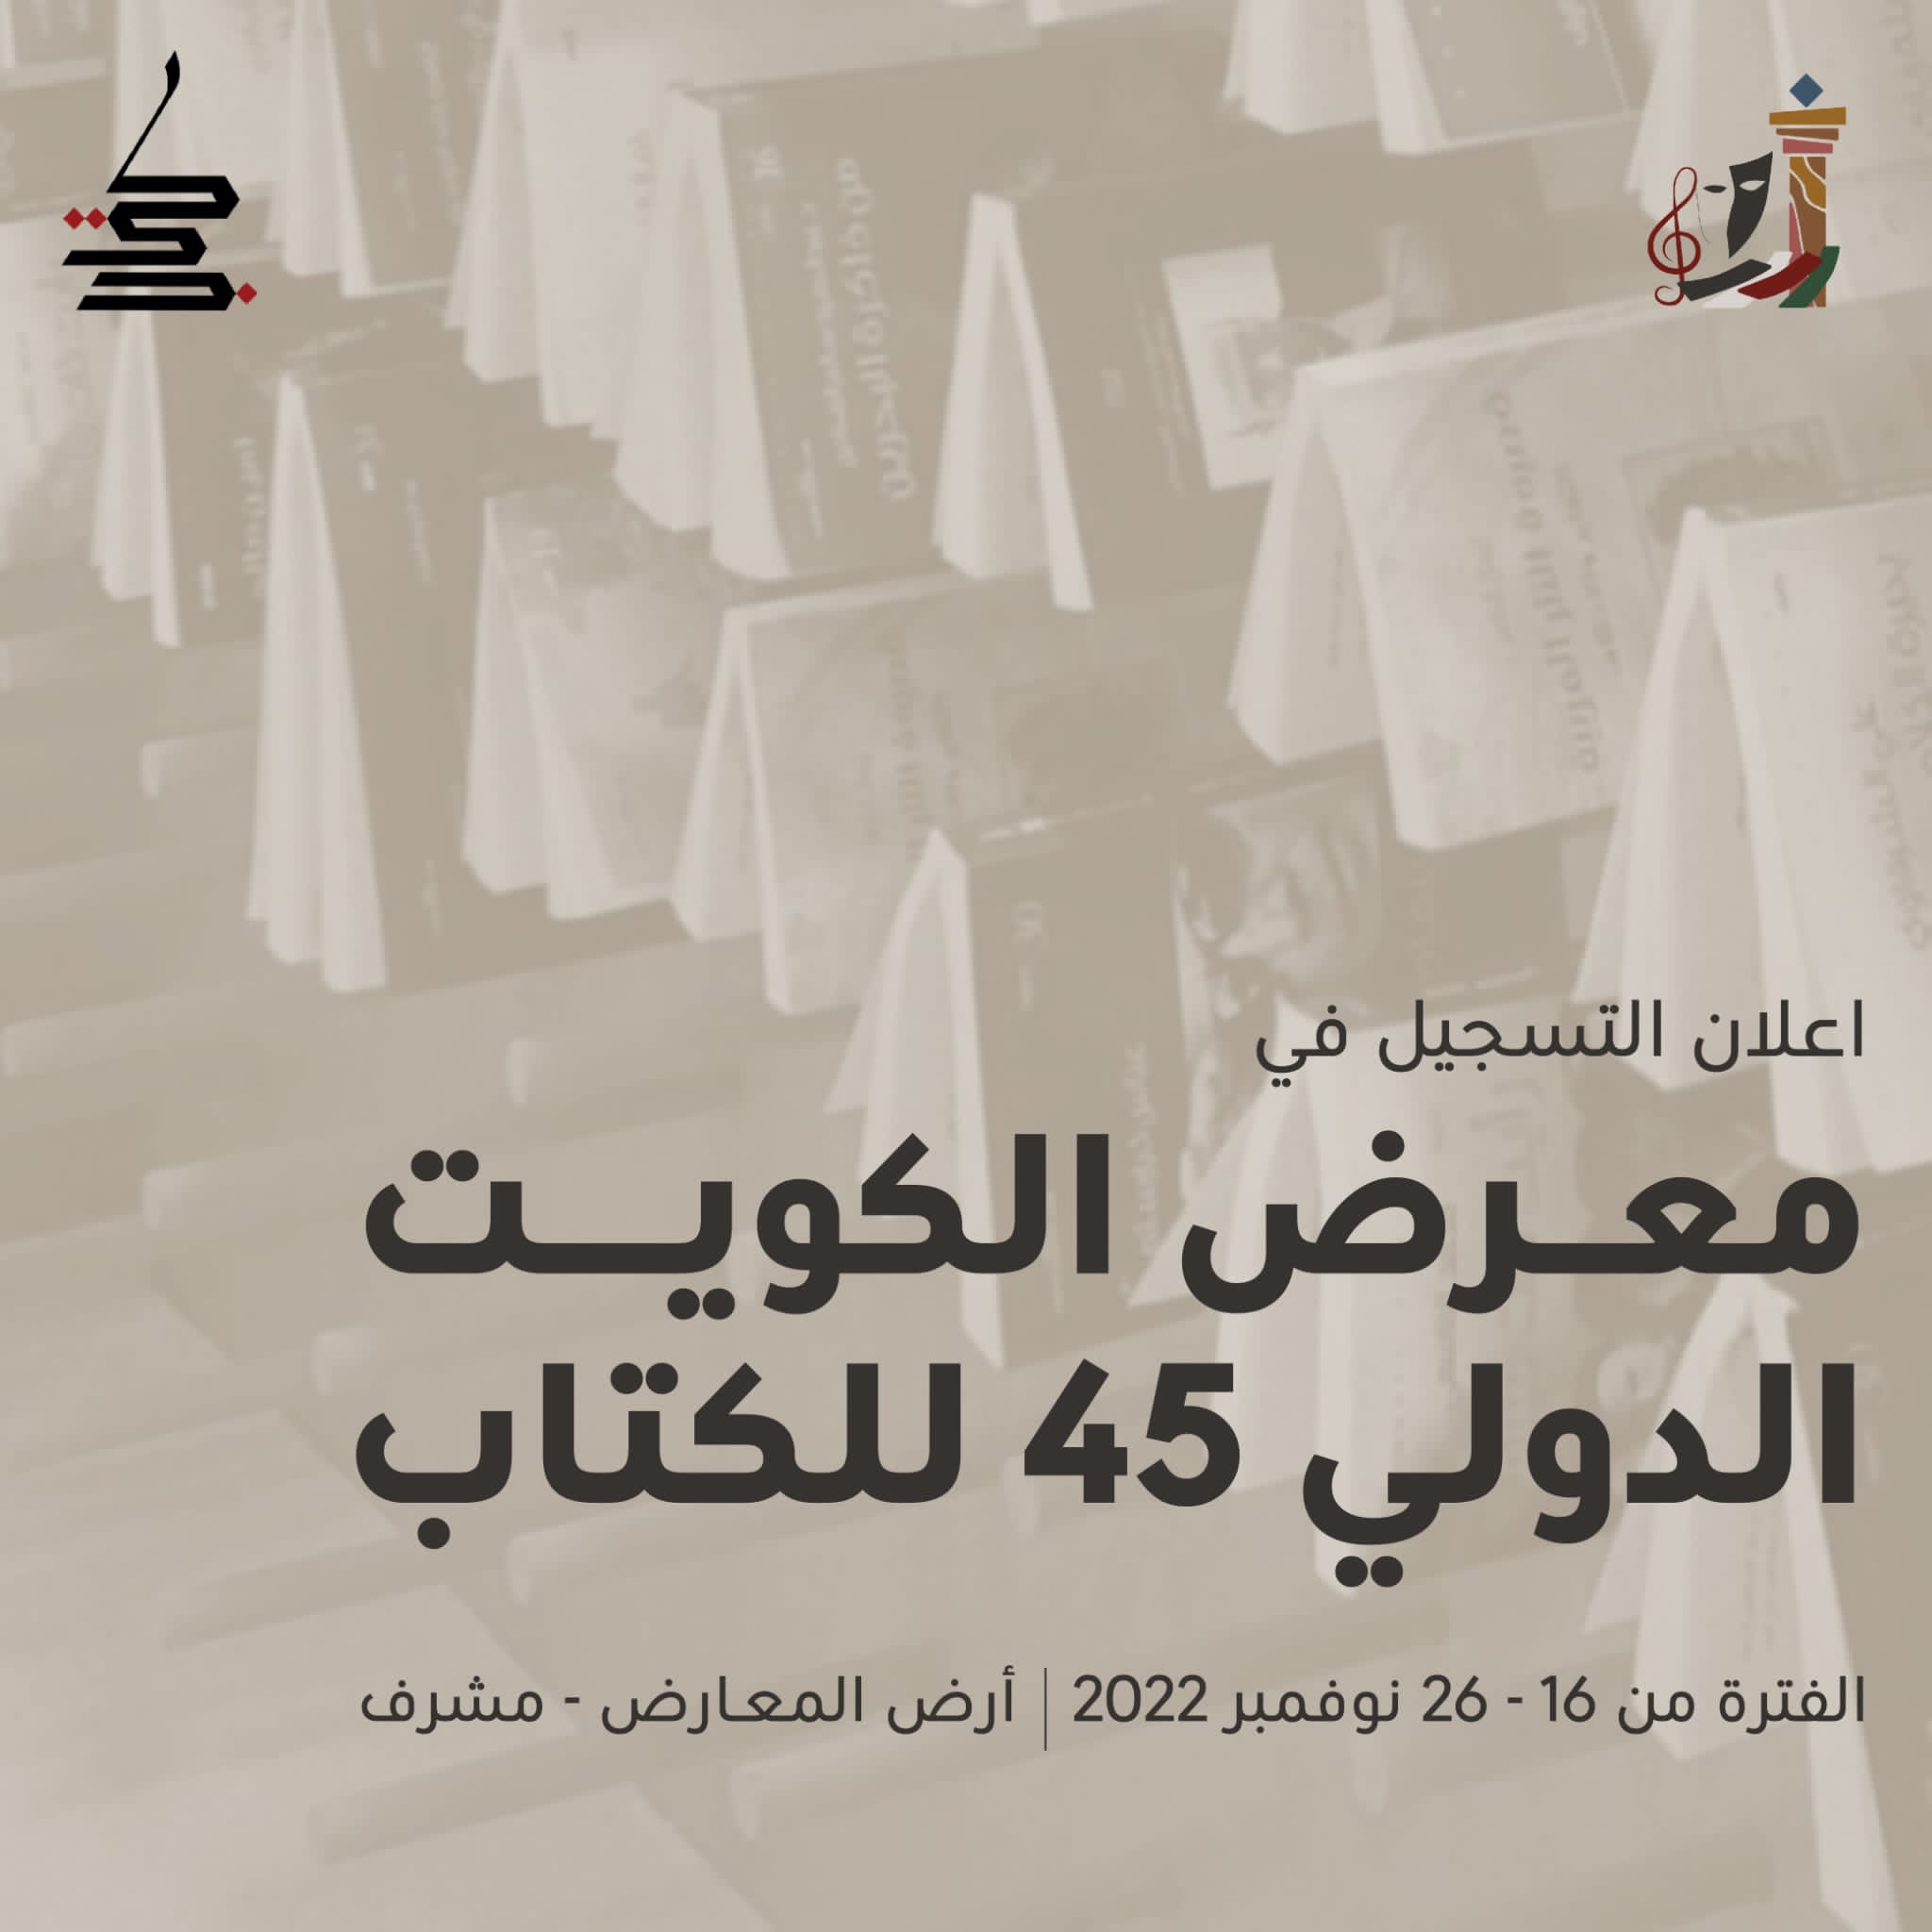 معرض الكويت الدولي للكتاب 2022 يستعد لغلق باب المشاركة